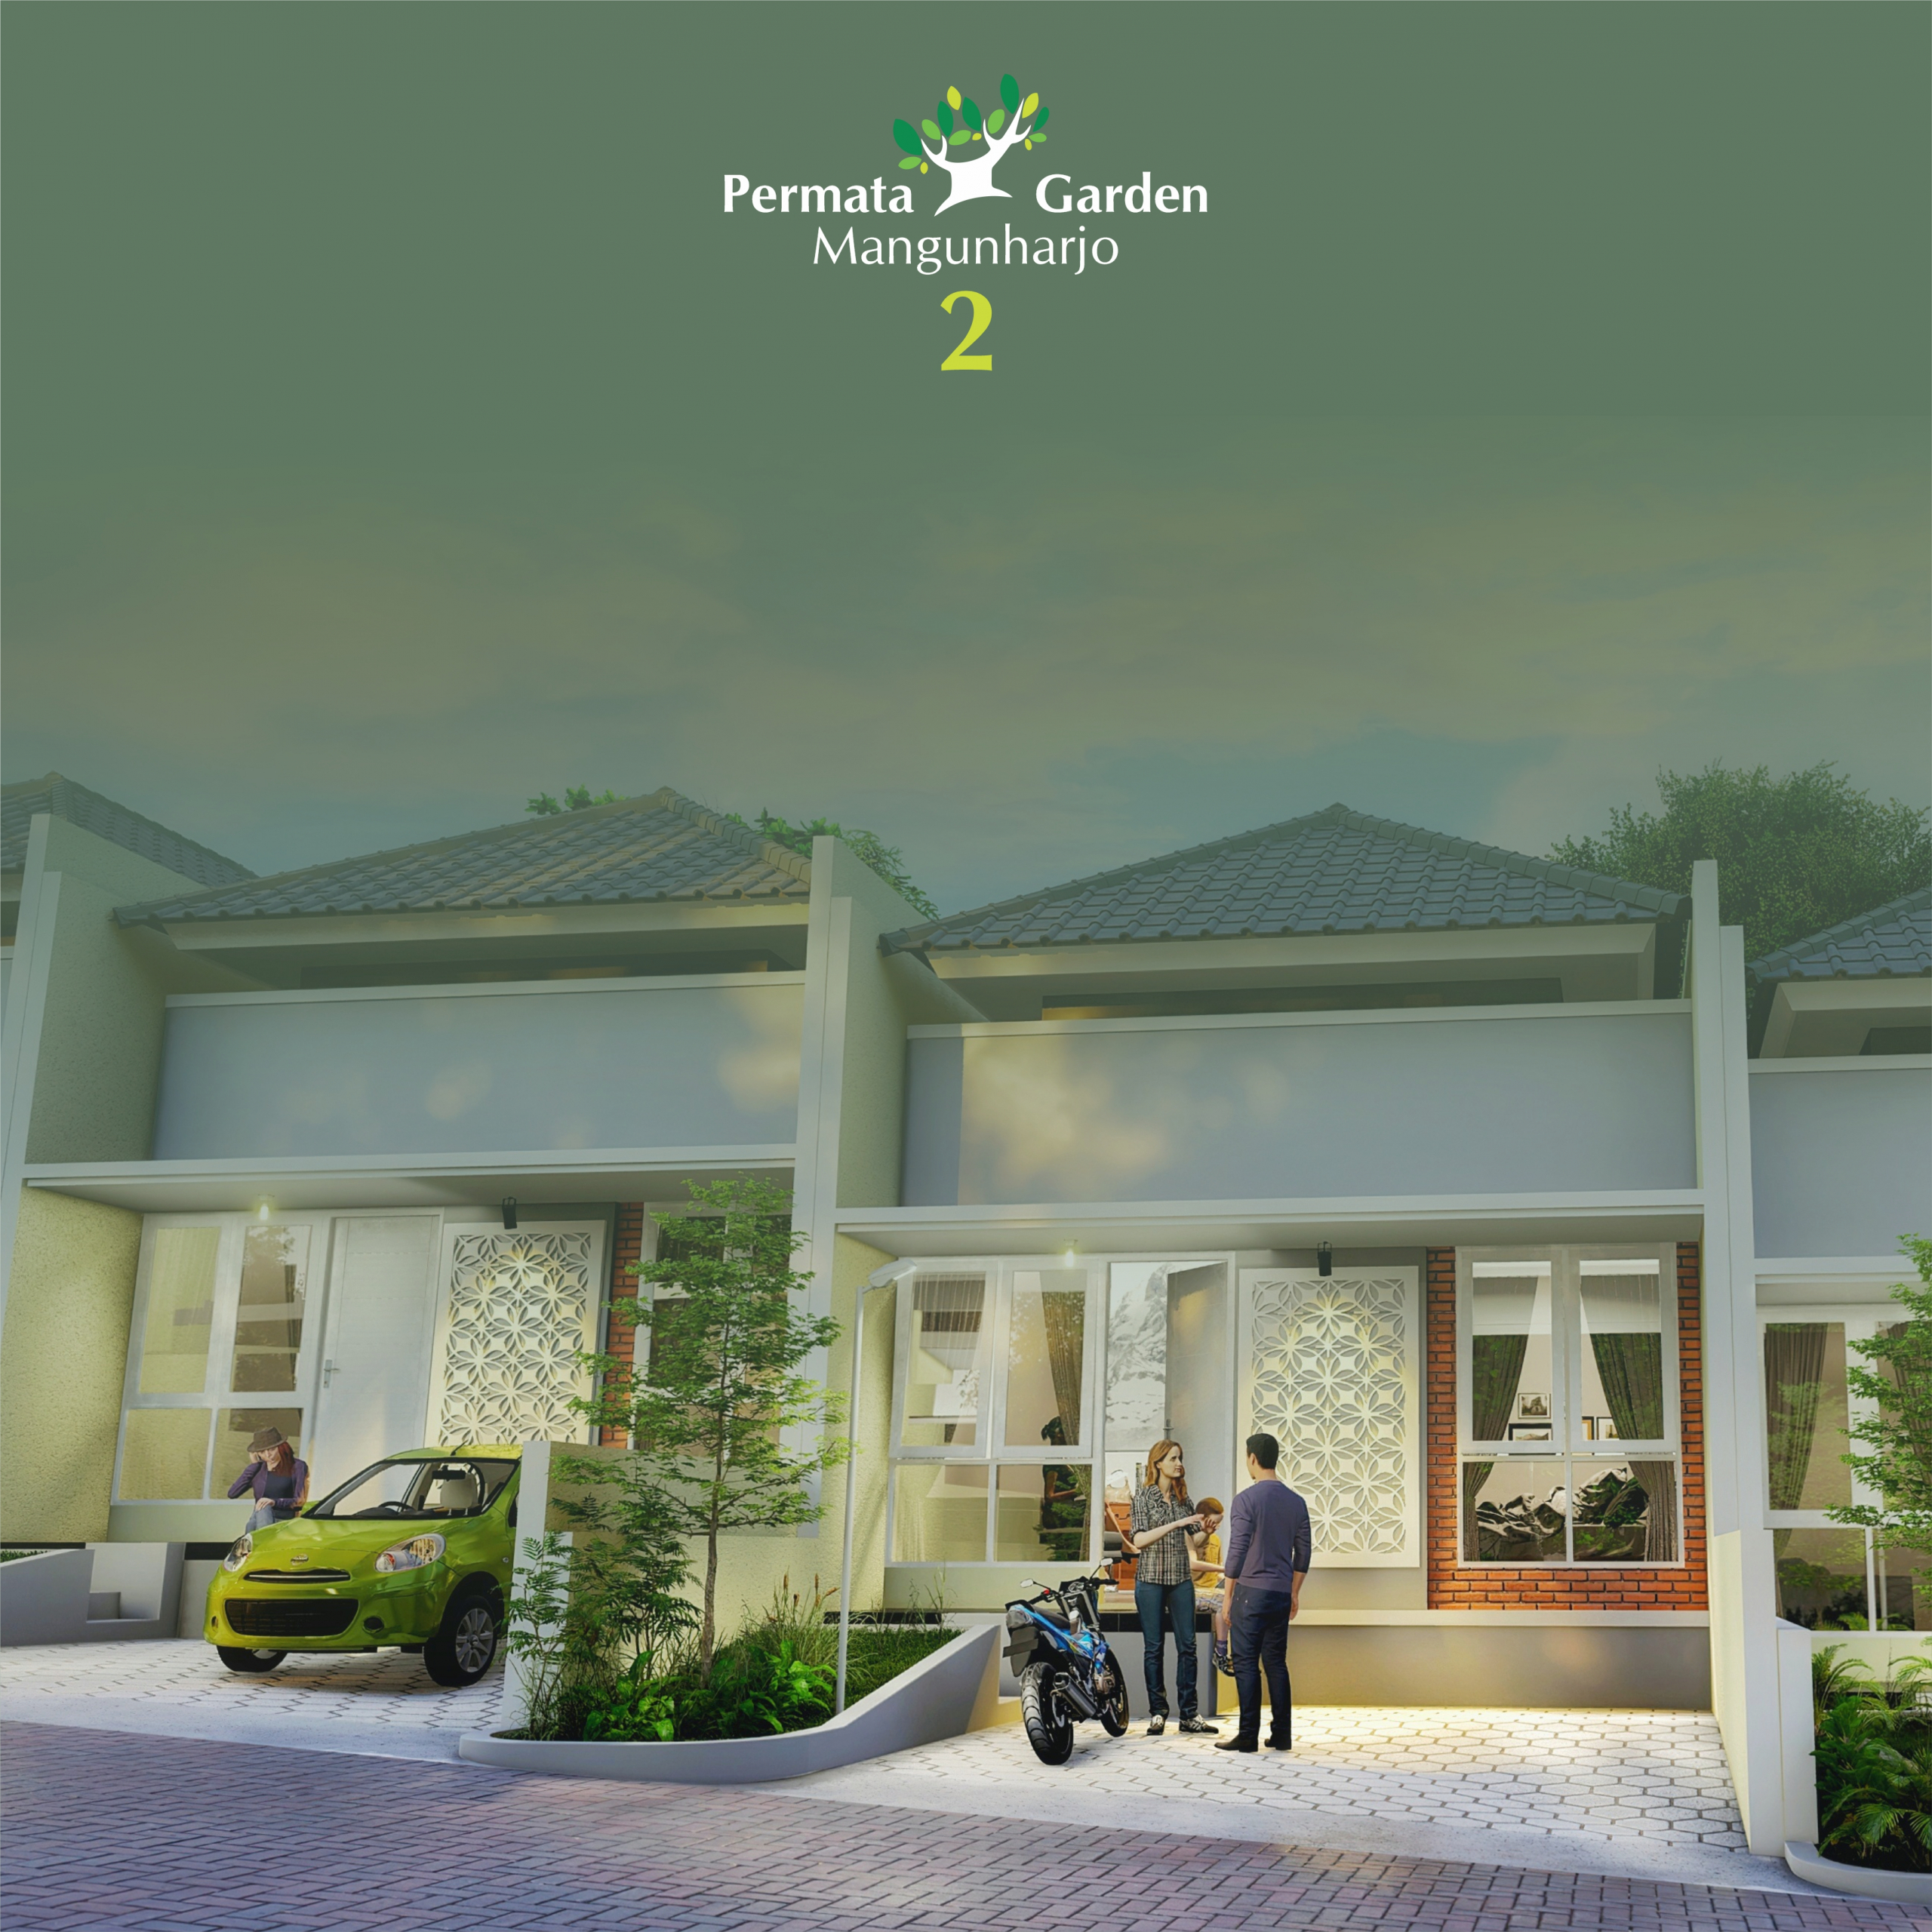 Developer Penjual Propertyhunianperumahan Berkualitas Berfasilitas Terlengkap Dengan Harga Terbaik Di Semarang By Fasindo Property